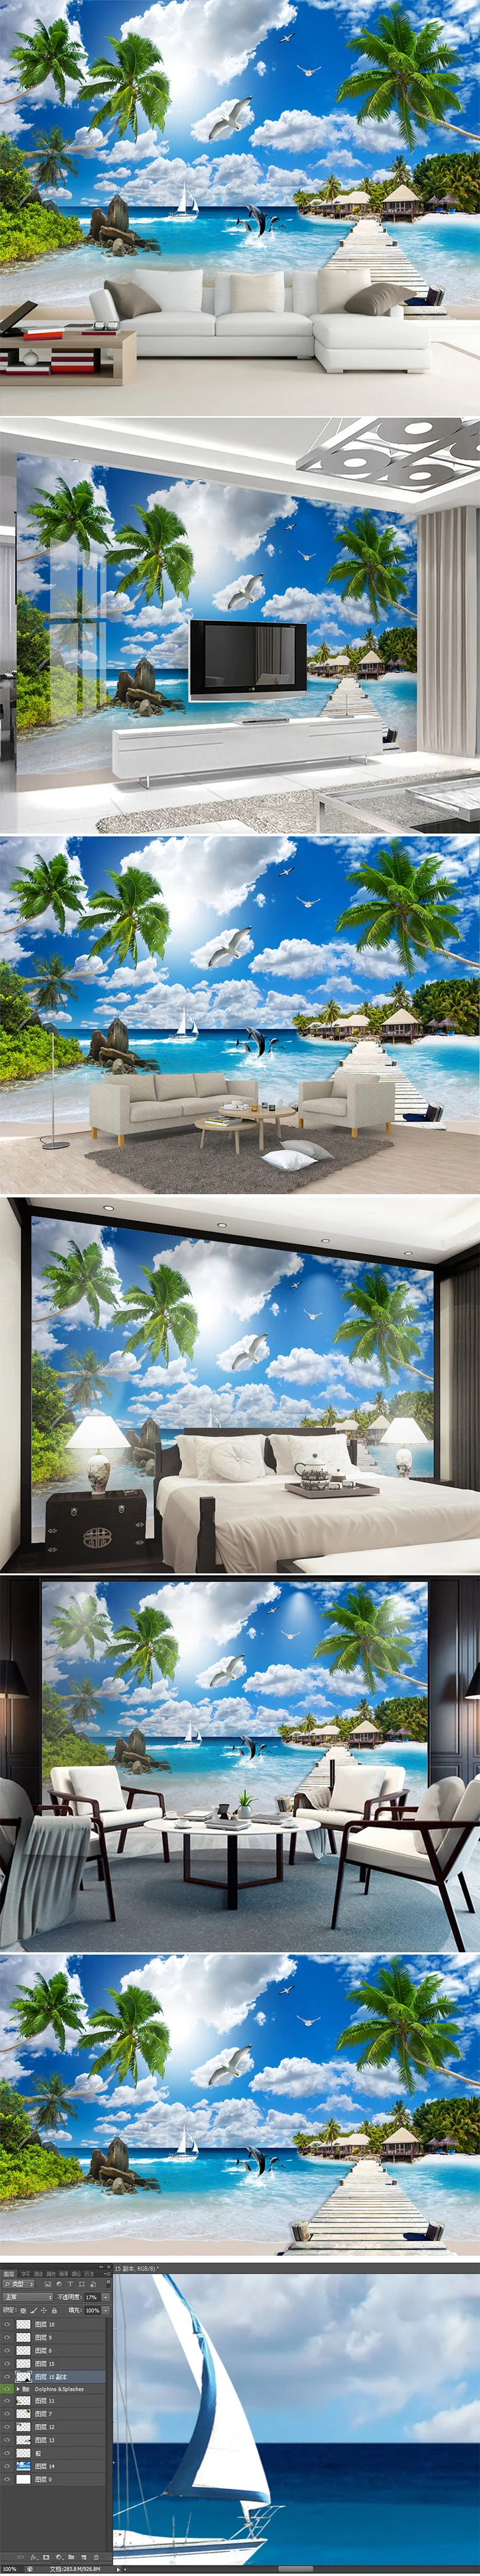 Diantu Maldives морской пейзаж 3D обои кокосовой пальмы диван гостиная ТВ фон стены пляж обои фрески